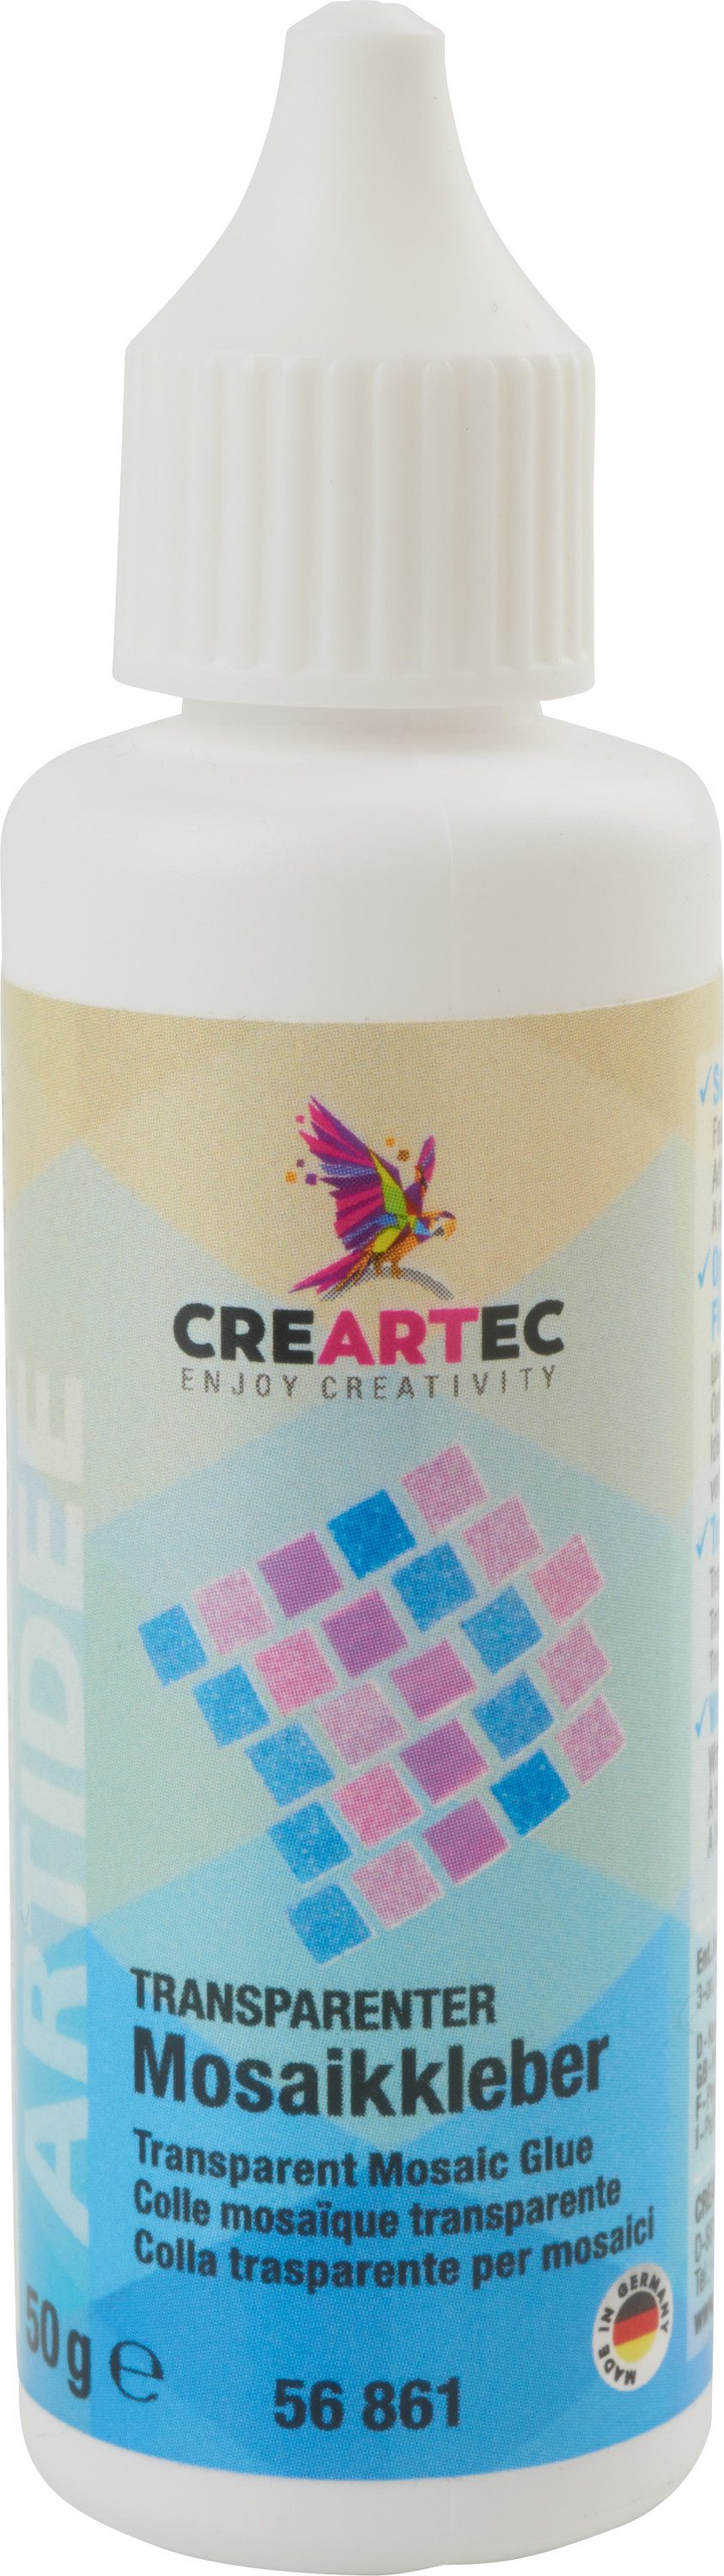 CREARTEC Bastelkleber Transparenter Mosaikkleber, 50 g